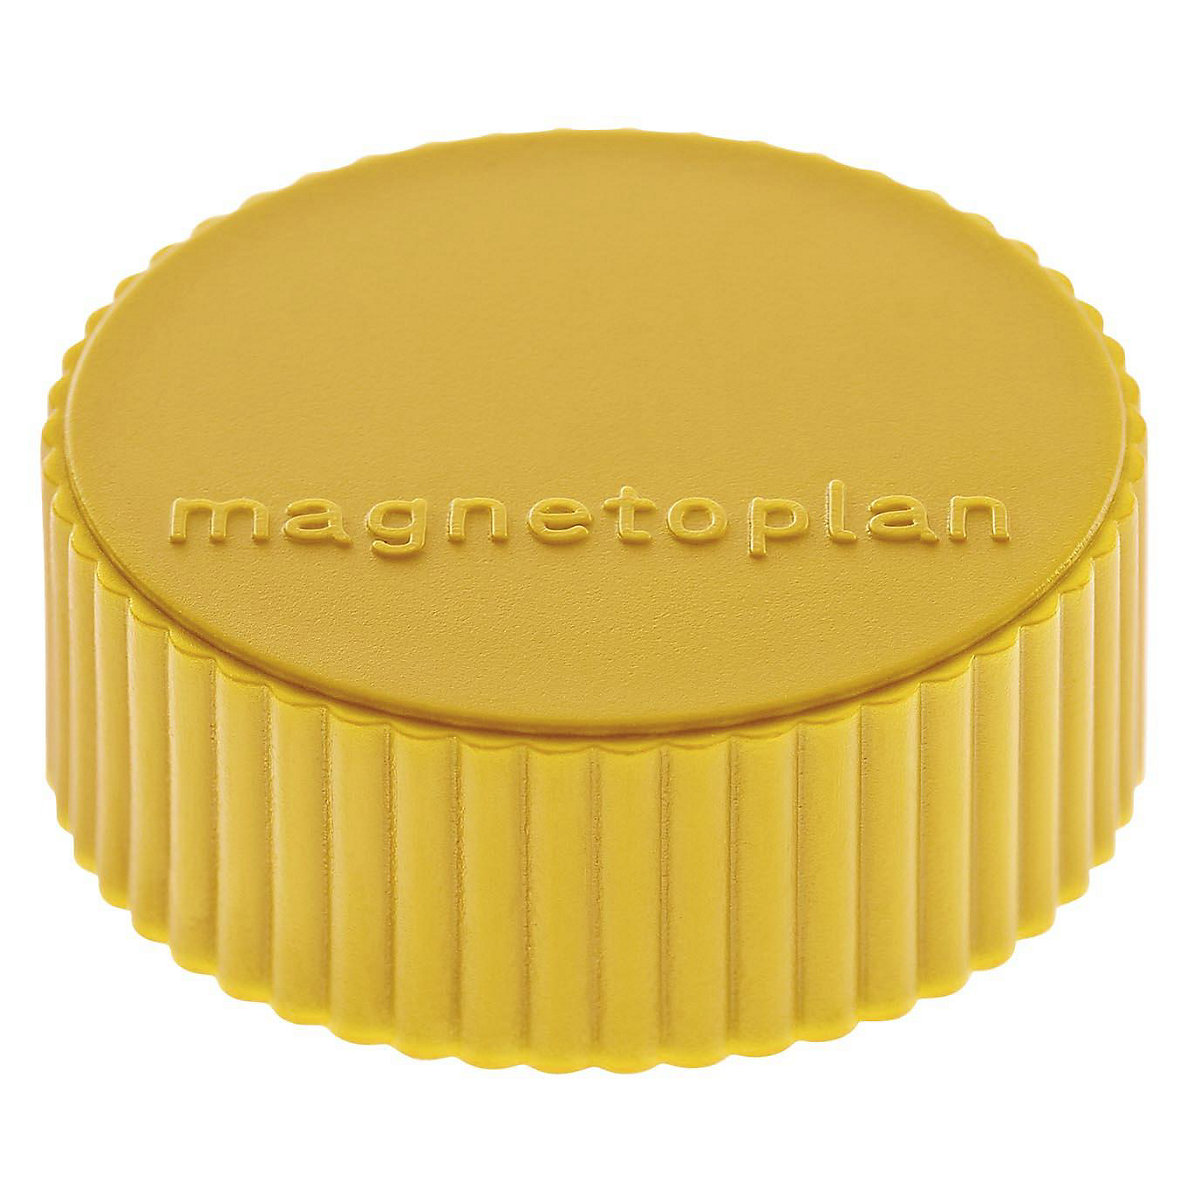 Plot magnétique DISCOFIX MAGNUM – magnetoplan, Ø 34 mm, lot de 50, jaune